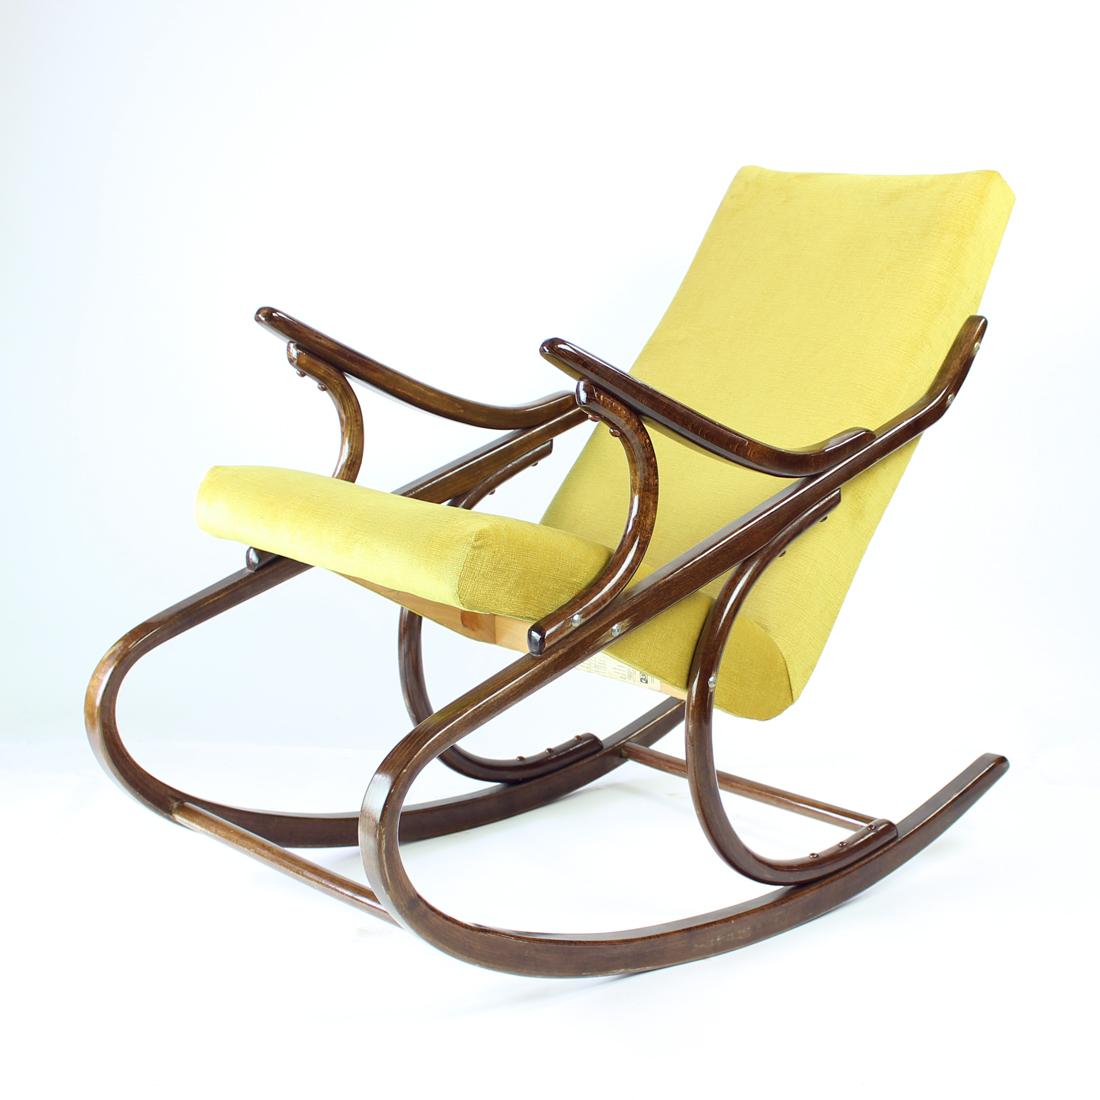 Magnifique fauteuil à bascule original des années 19860. Produit par TON, étiquette originale encore attachée. La chaise est en très bon état. La construction est originale en chêne à bois courbé avec un vernis à haute brillance. Le vernis est